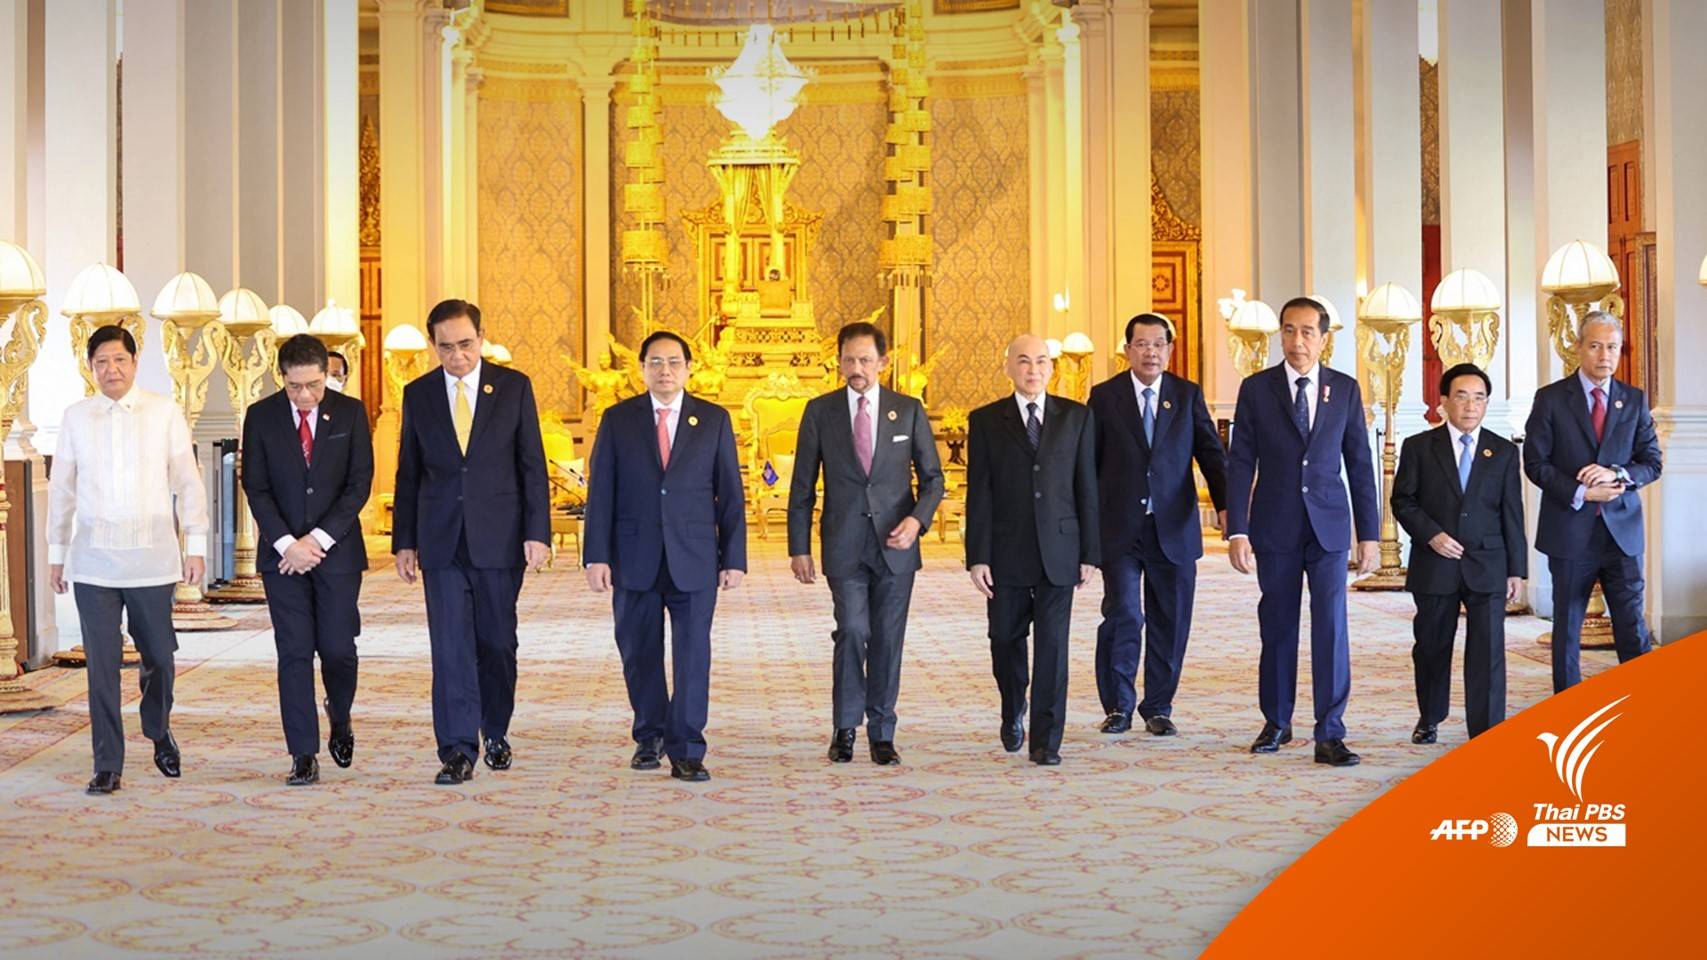 "ผู้นำชาติอาเซียน-คู่เจรจา" ถึงกัมพูชาพร้อมประชุมสุดยอดอาเซียน